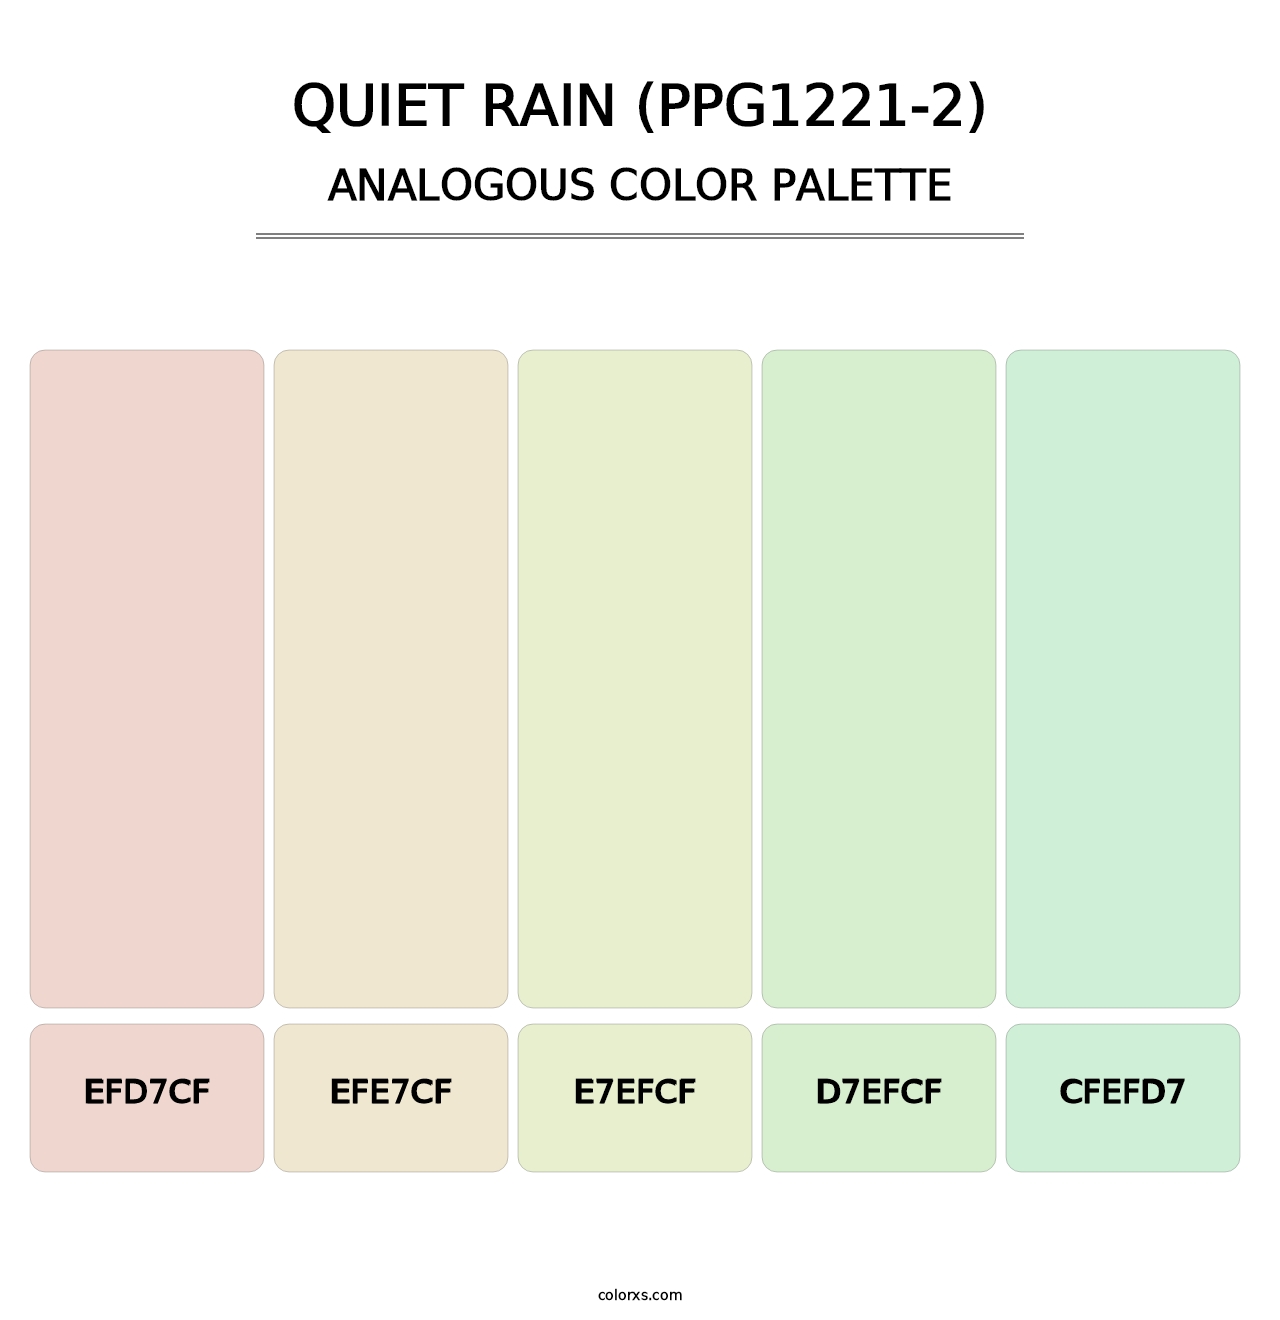 Quiet Rain (PPG1221-2) - Analogous Color Palette